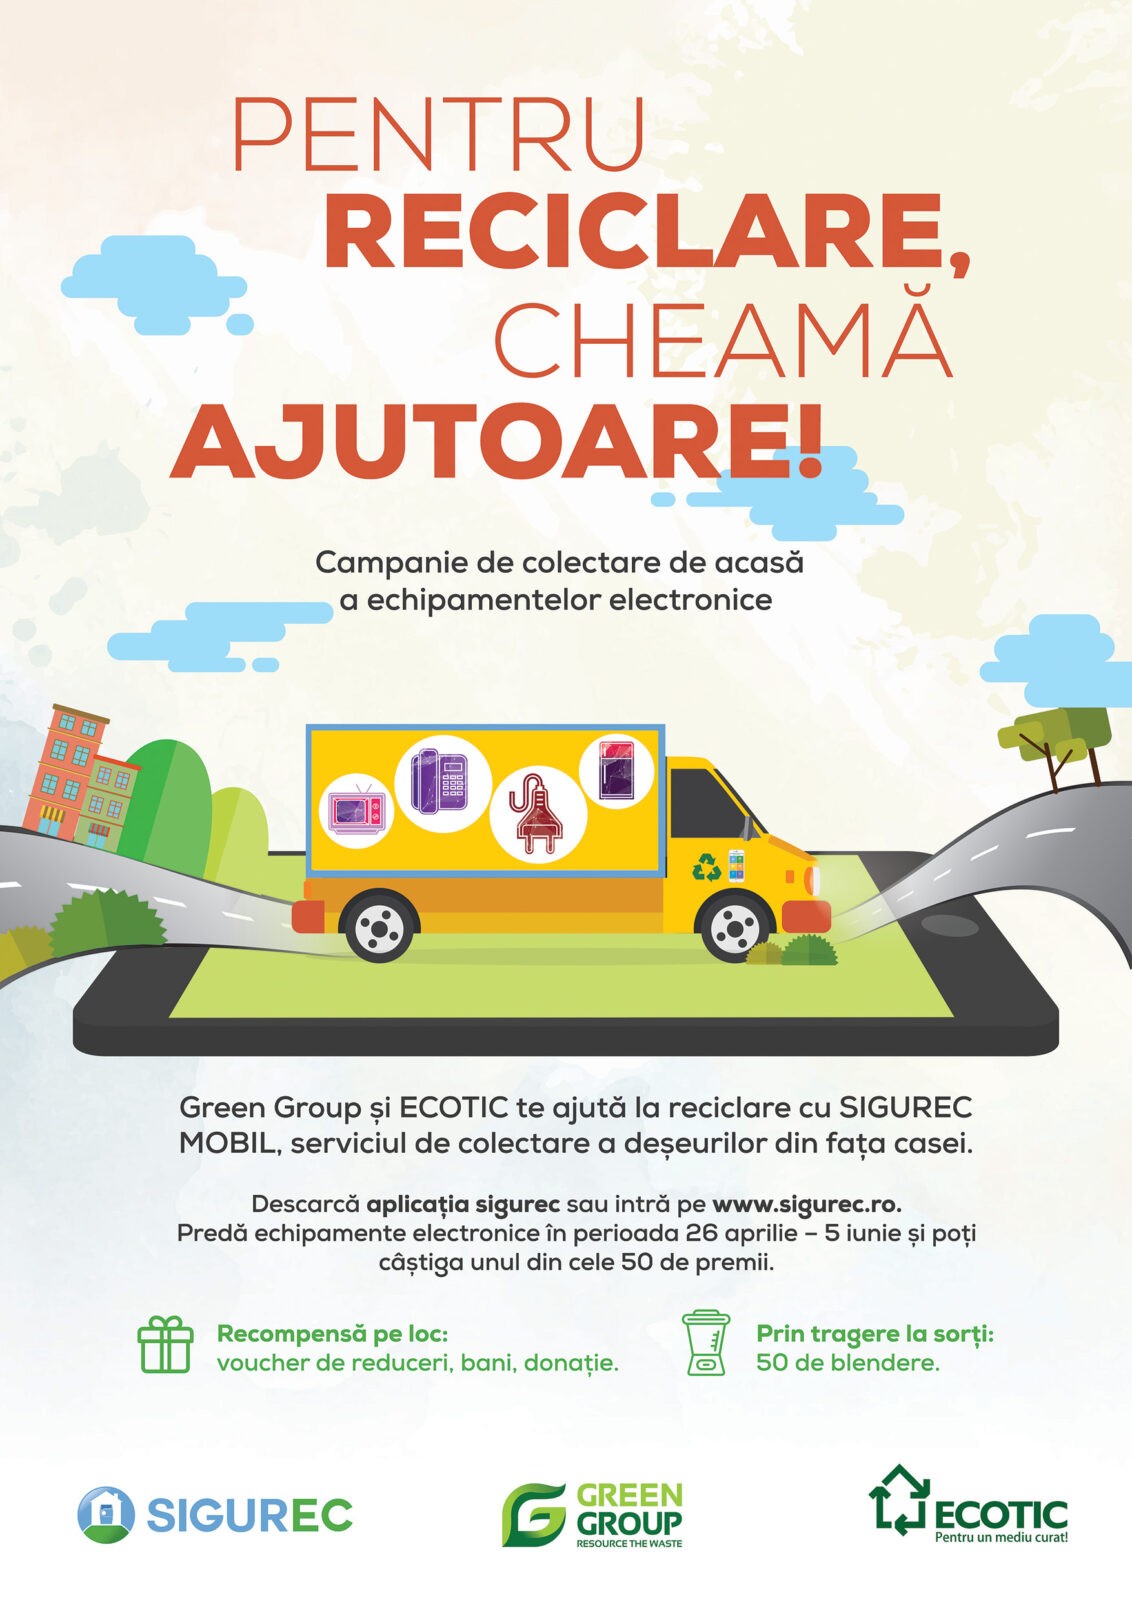 Campanie ECOTIC si Green Group: “Pentru reciclare, cheama ajutoare!”